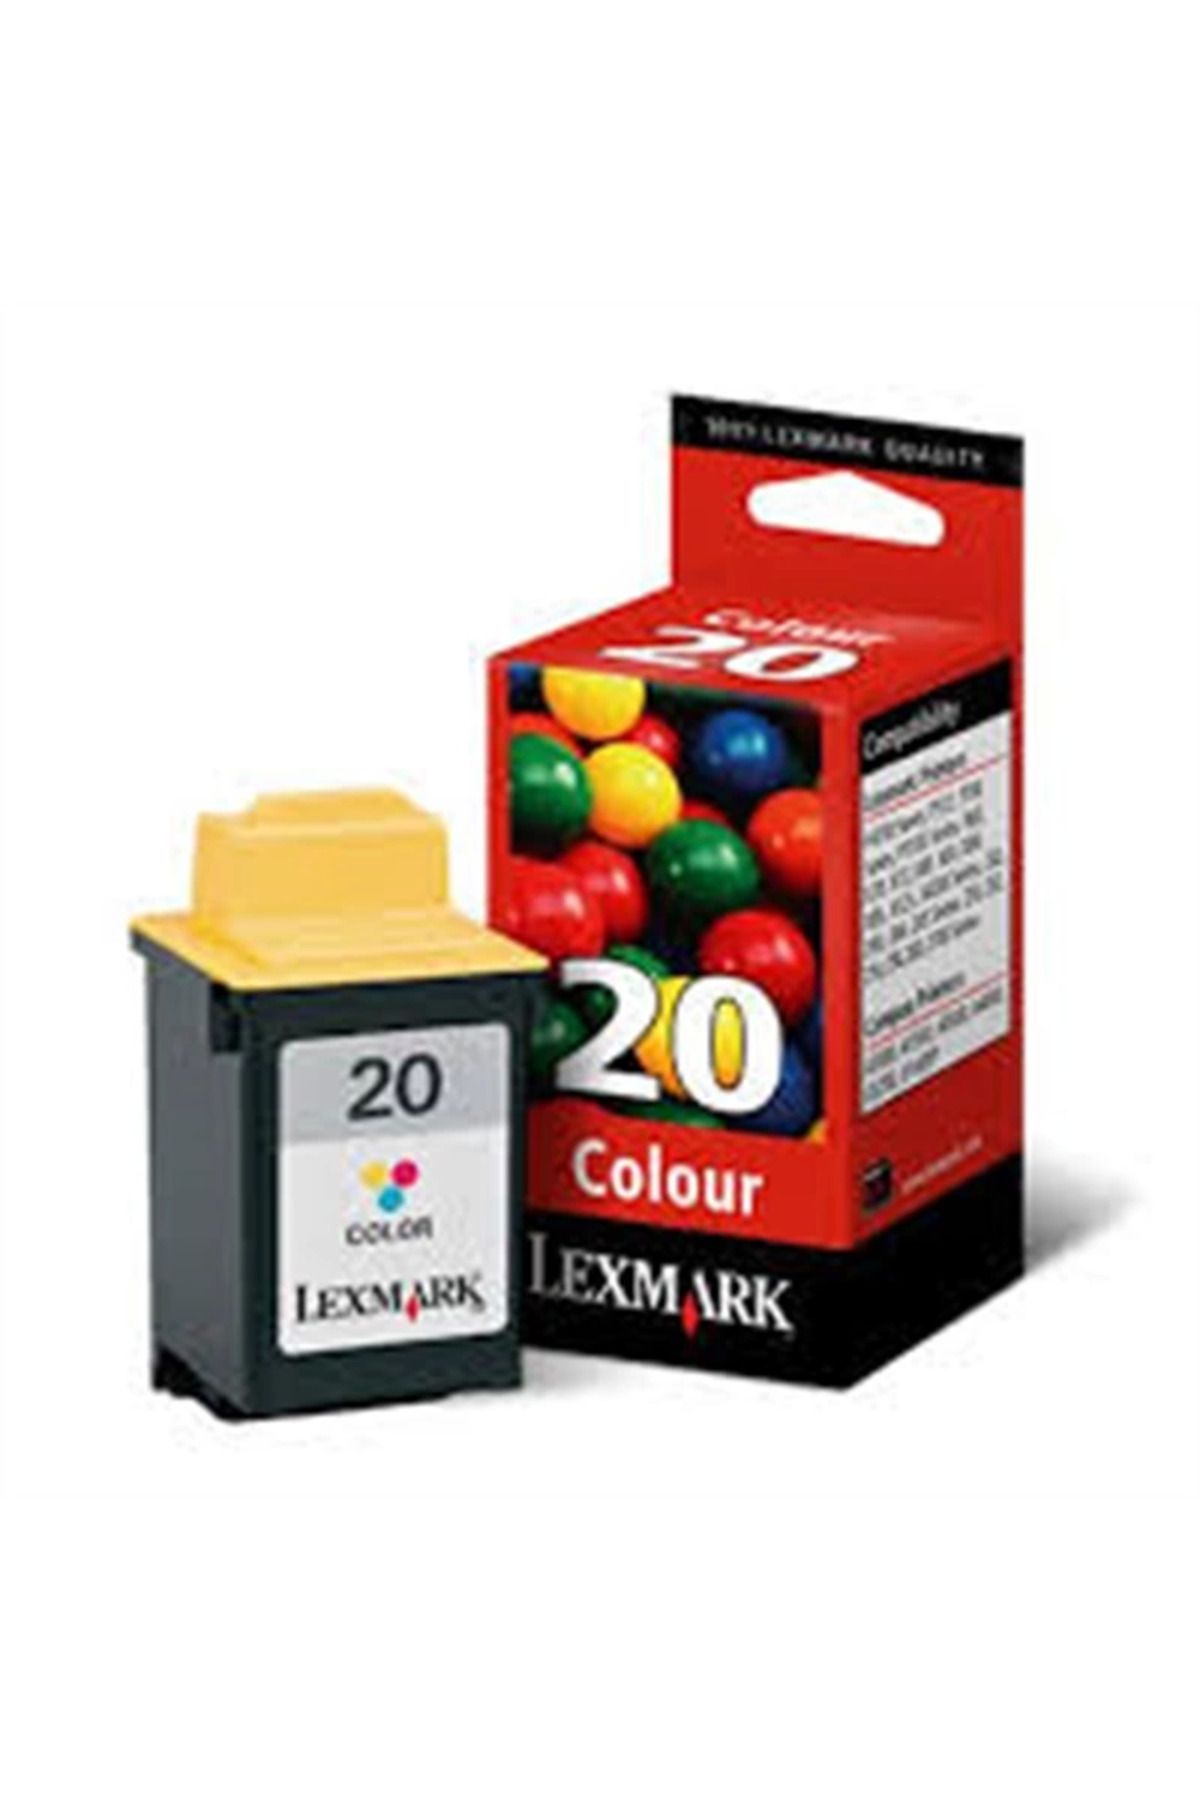 Lexmark Outlet 15m0120 20 Renkli Kartuş 270 Sayfa (F4270 İJ3200 X6570 Z11 Z53)